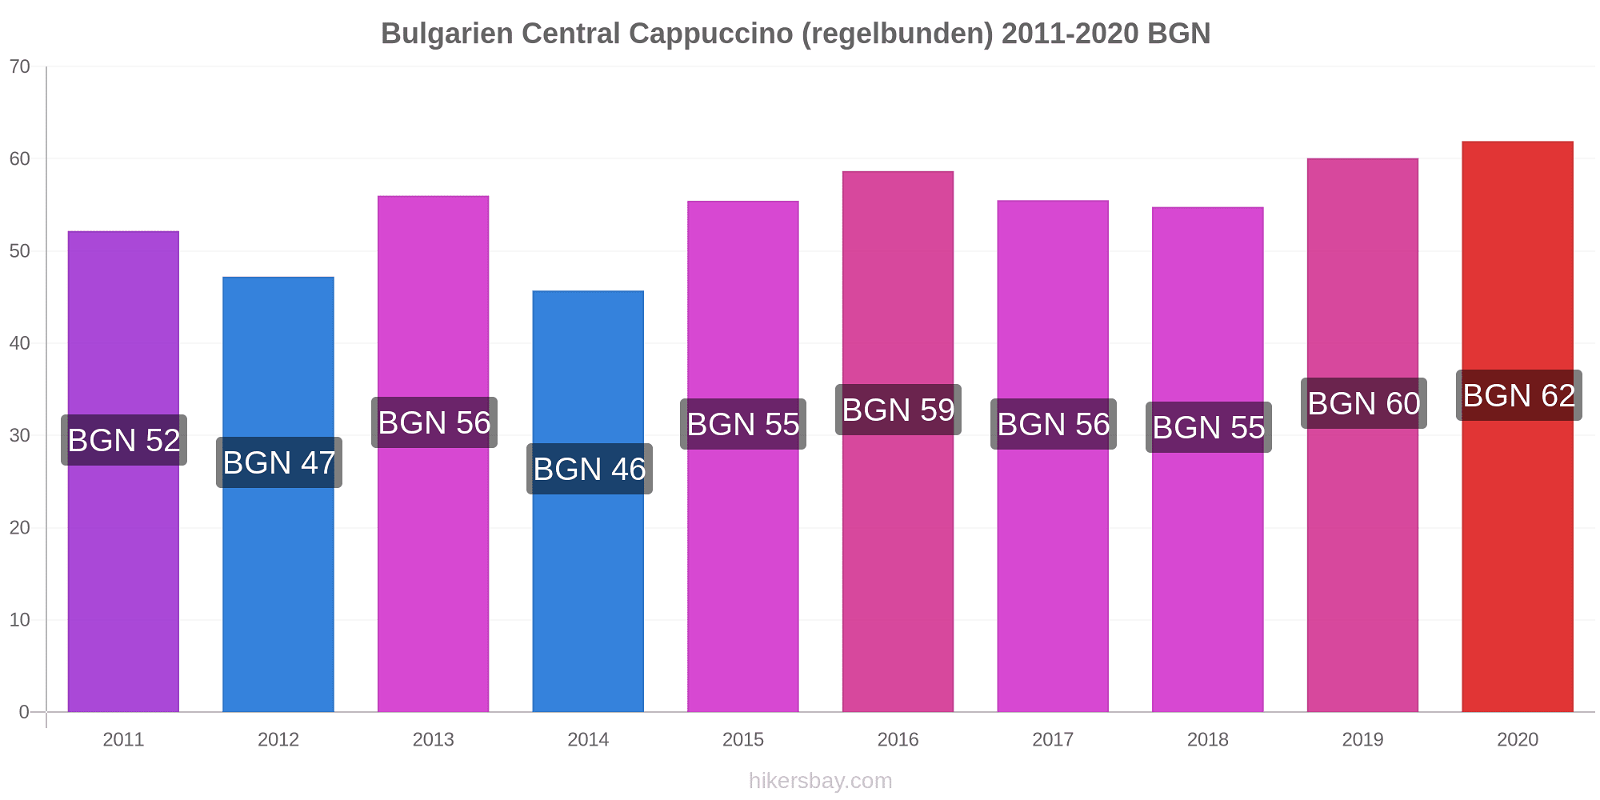 Bulgarien Central prisförändringar Cappuccino (regelbunden) hikersbay.com